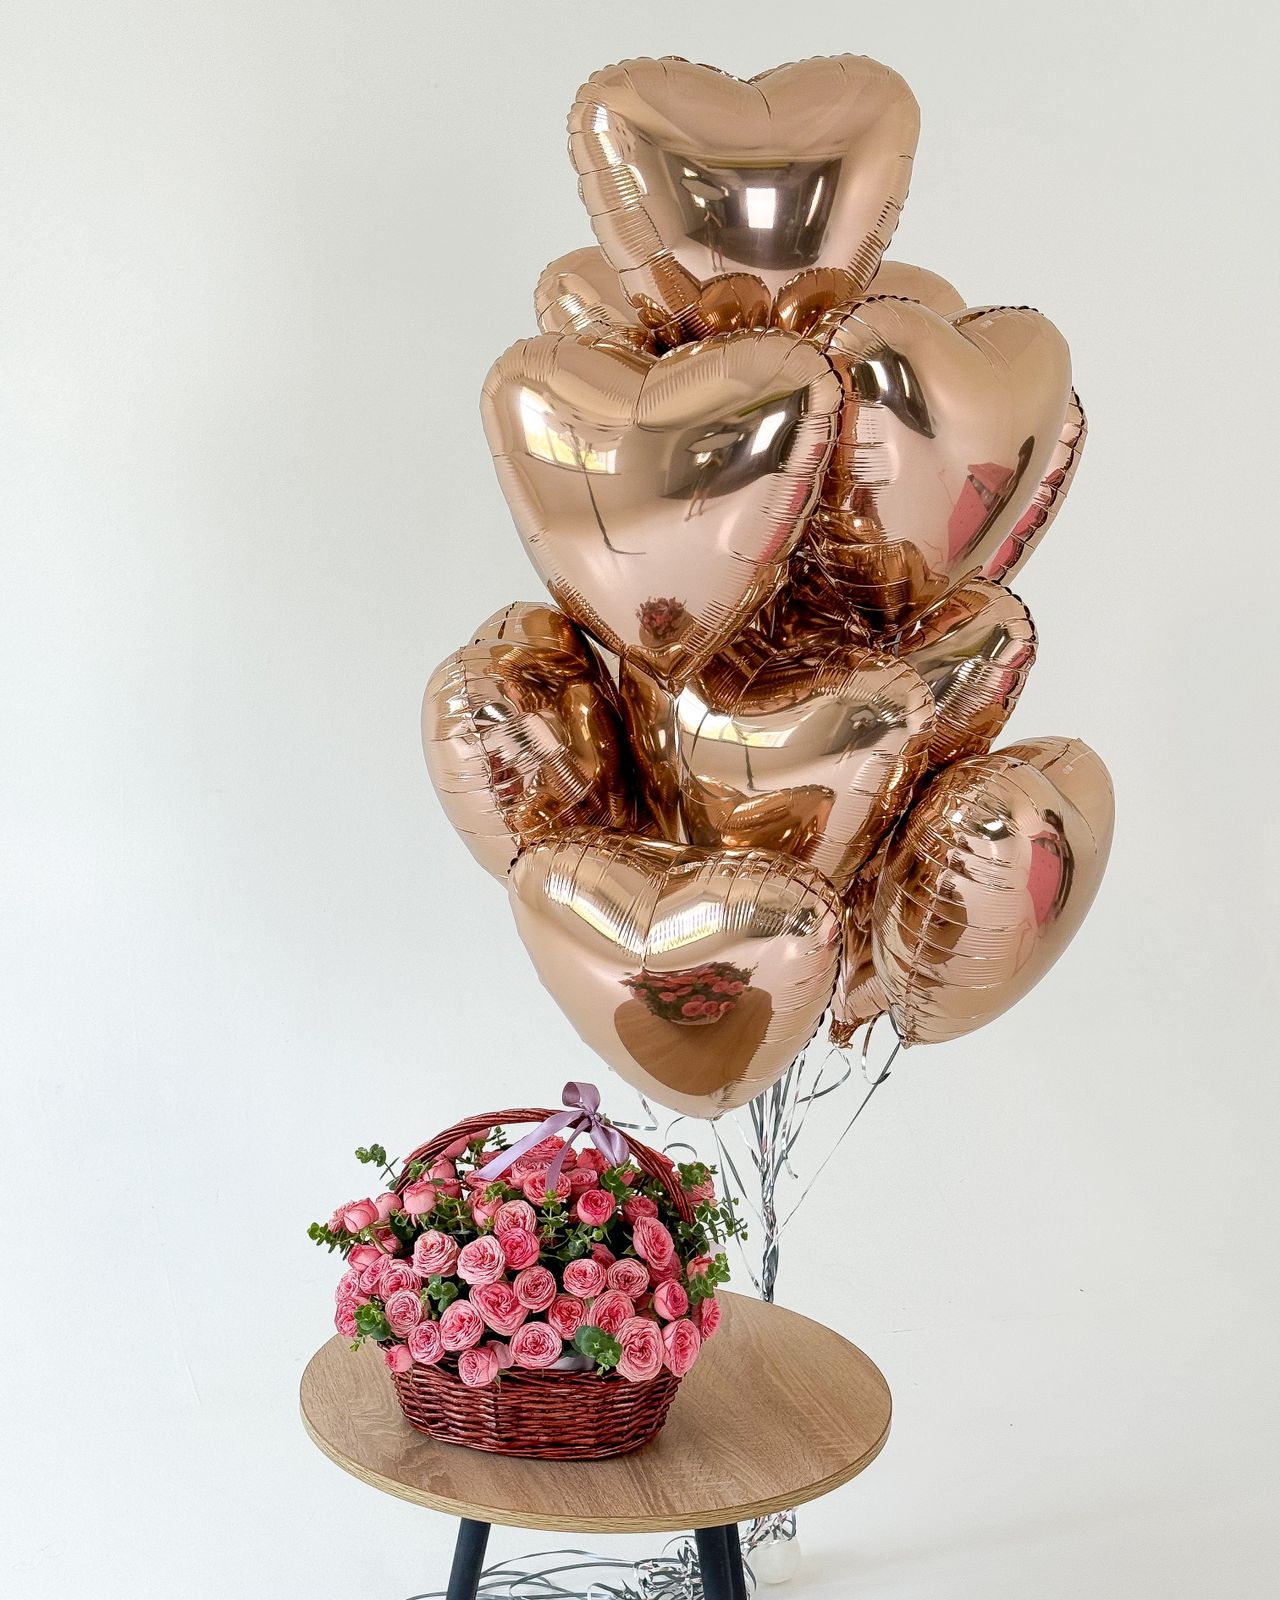 Сет "Chillo 4.0" корзина пионовидных роз и фонтан из воздушных шариков